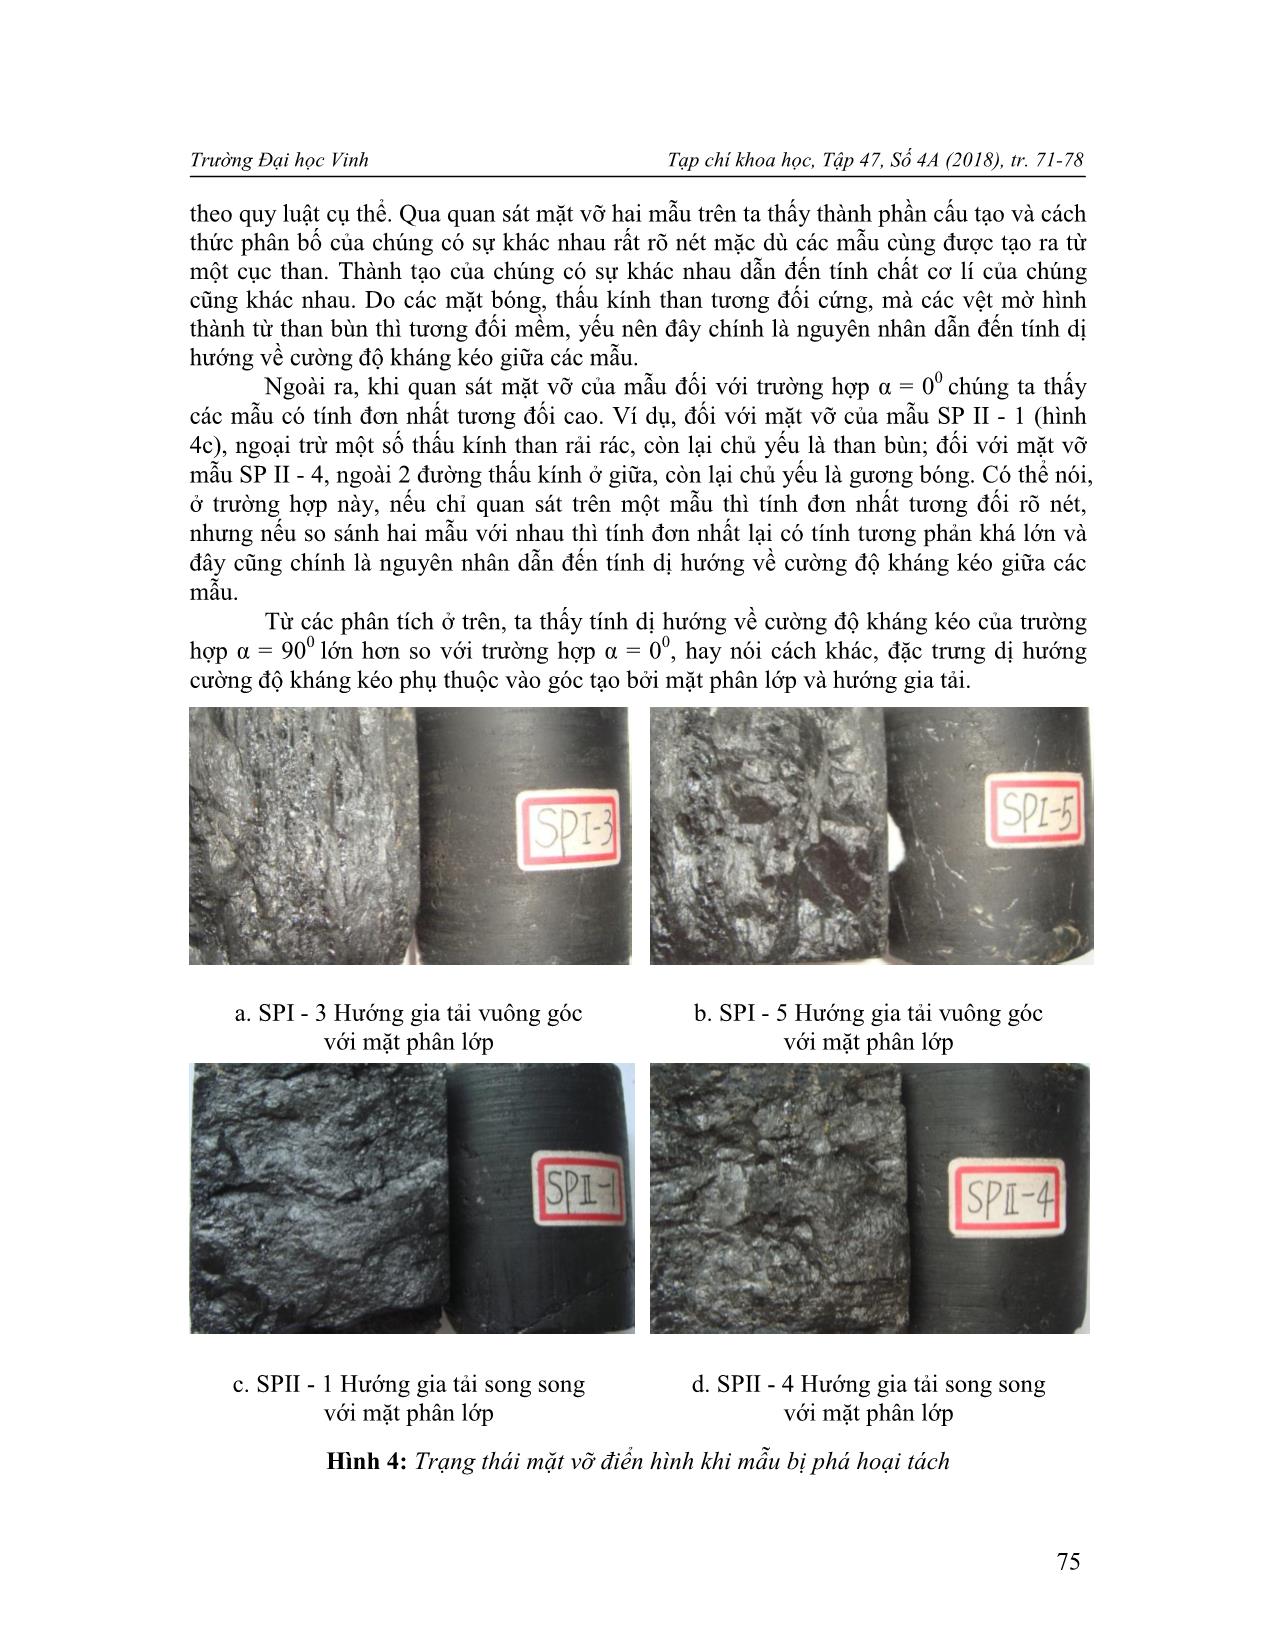 Nghiên cứu tính dị hướng độ bền của than thông qua thí nghiệm kéo gián tiếp trang 5